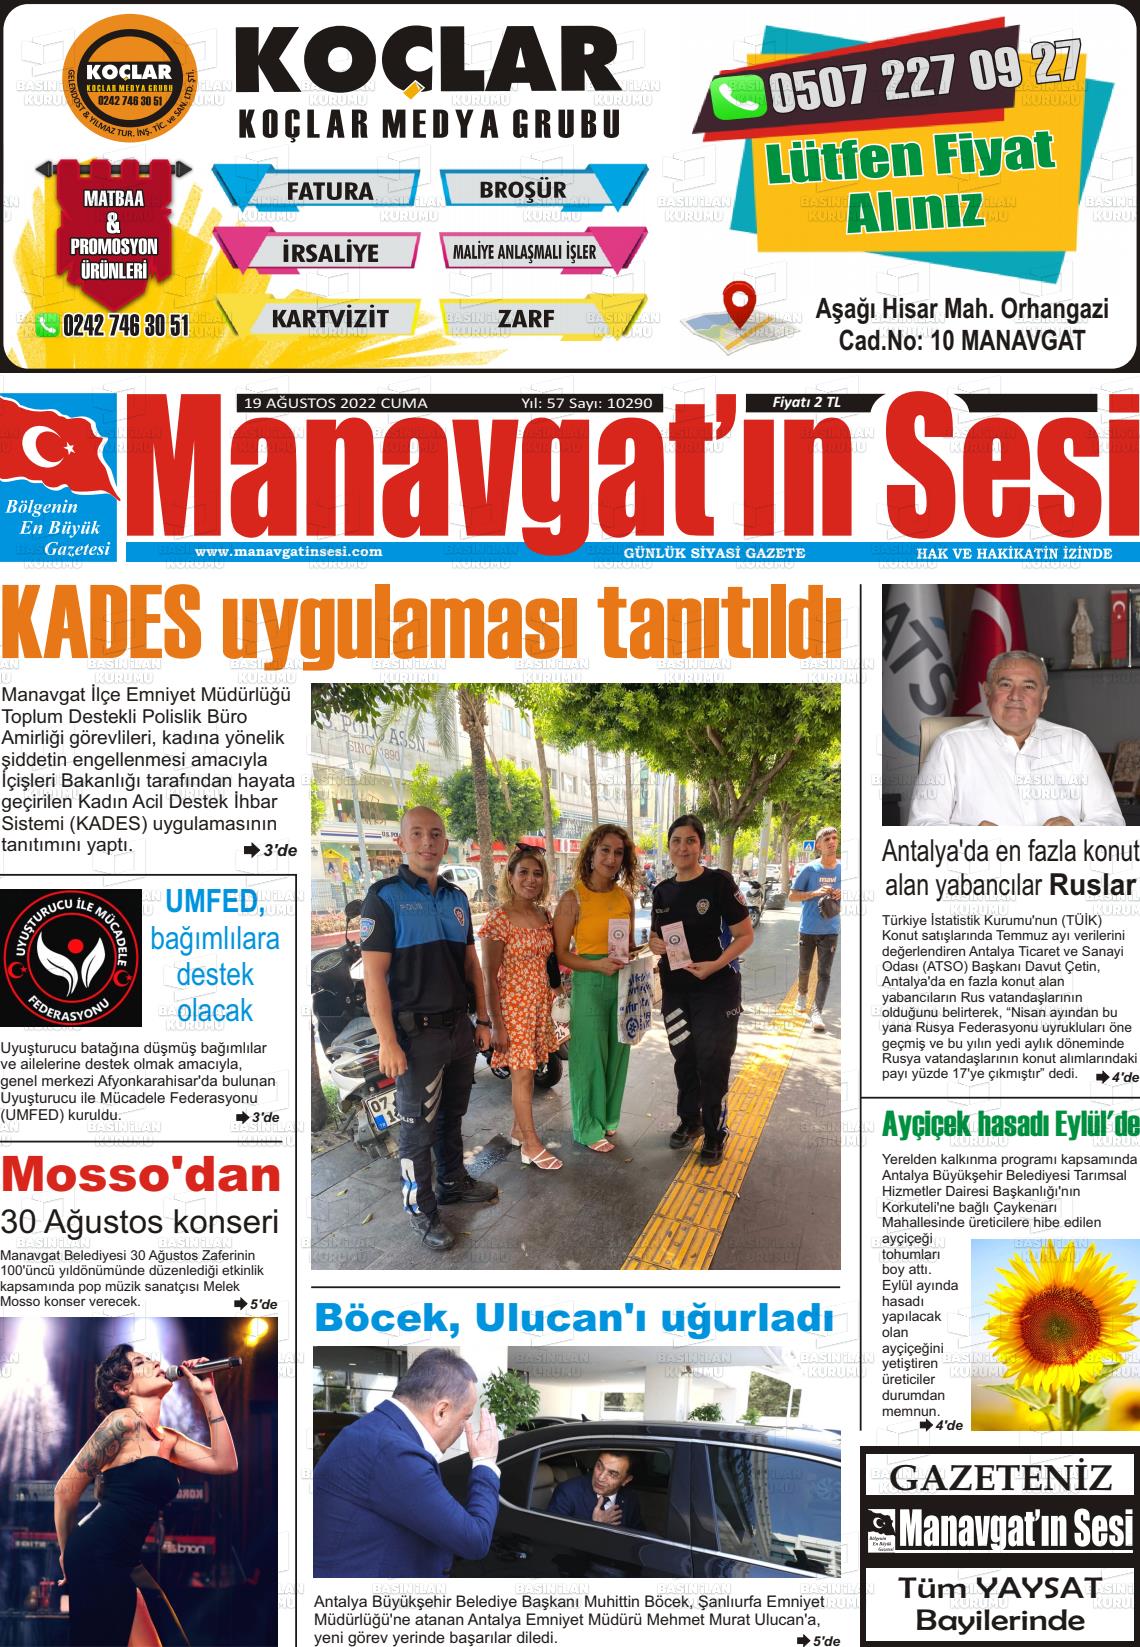 19 Ağustos 2022 Manavgat'ın Sesi Gazete Manşeti